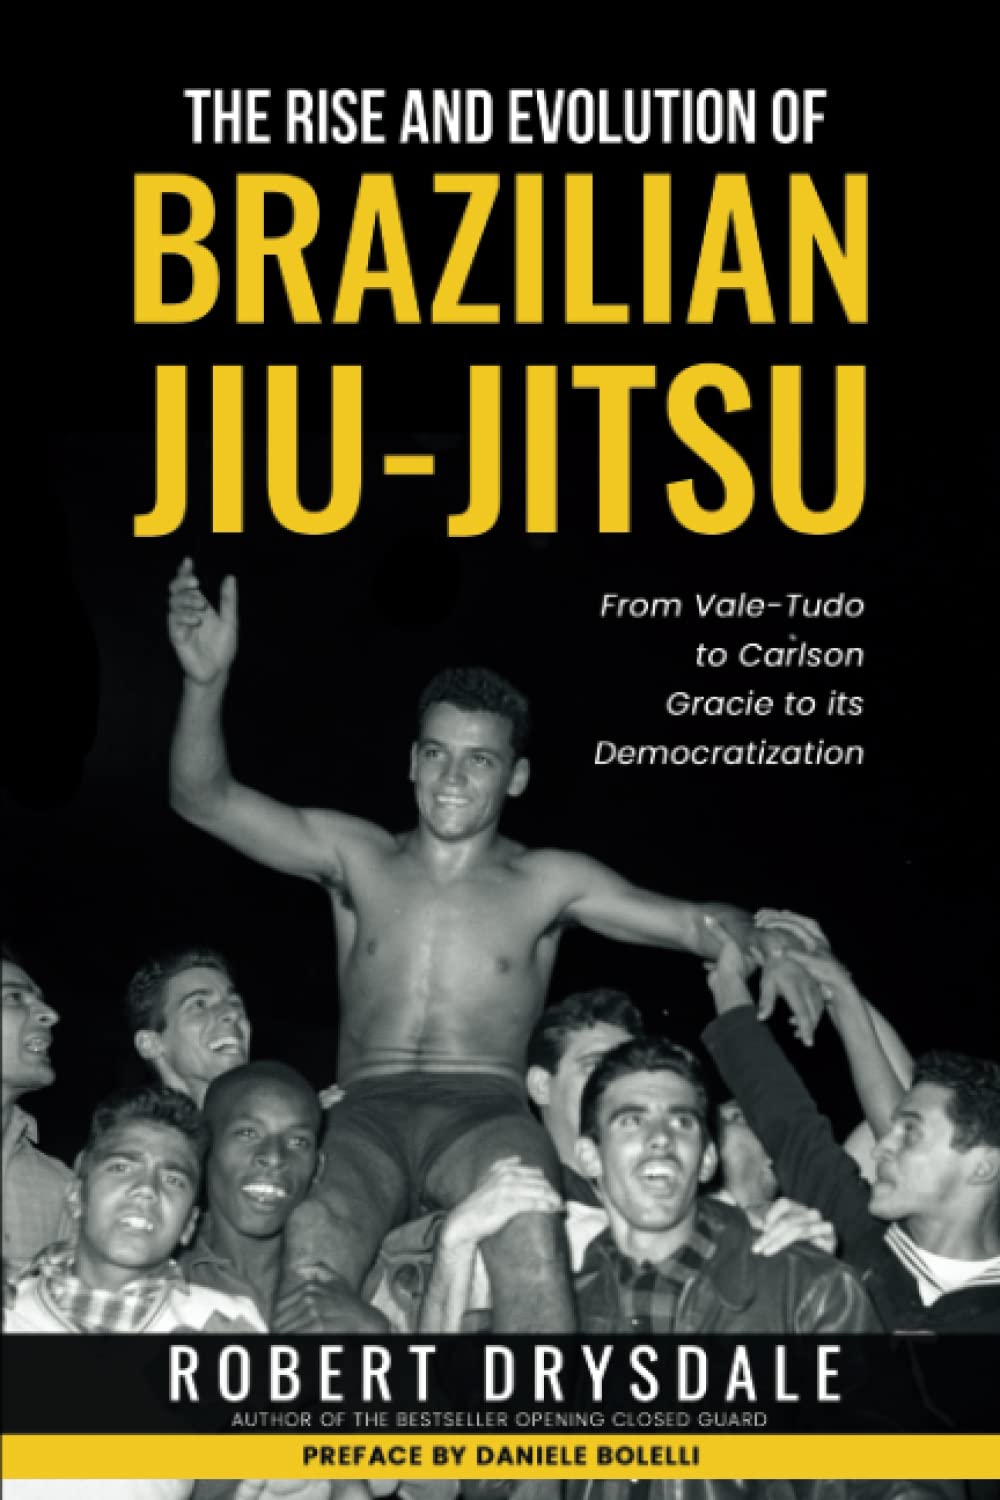 ブラジリアン柔術の隆盛と進化：ヴァーリトゥードからカールソン・グレイシー、そしてロバート・ドライズデール著の民主化本まで